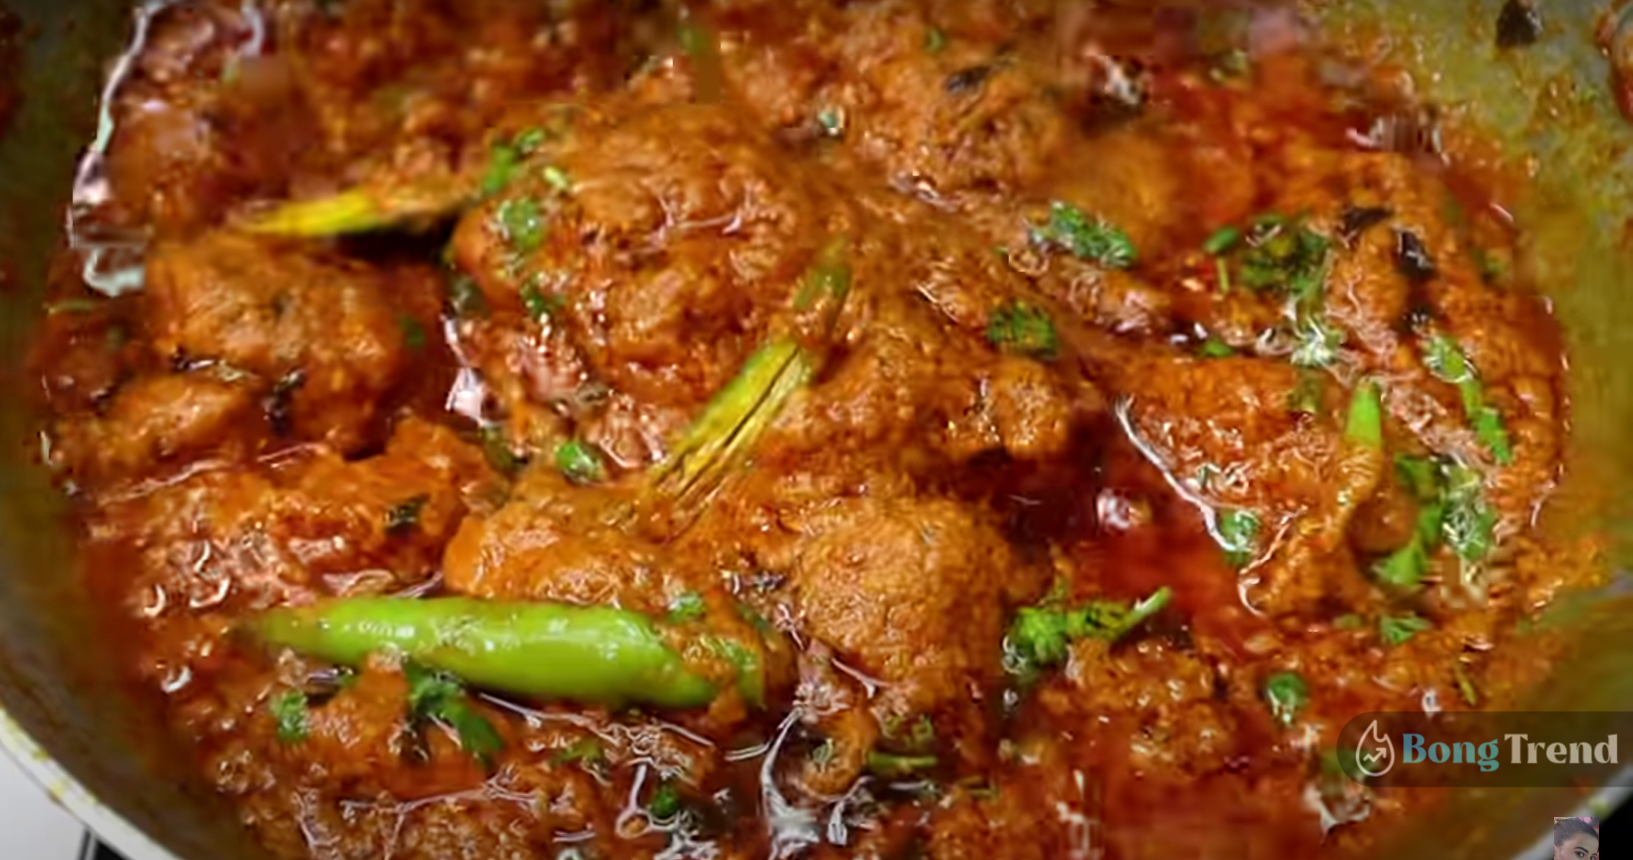 Sunday Speical Chicken Recipe,Mughlai Chicken Curry Recipe,Mughlai Chicken Curry,মোঘলাই চিকেন কারি,মোঘলাই চিকেন কারি রেসিপি,রবিবারের রান্না,চিকেনের রেসিপি,Sunday Special Chicken Recipe,Chicken Recipe,Bengali Cuisine